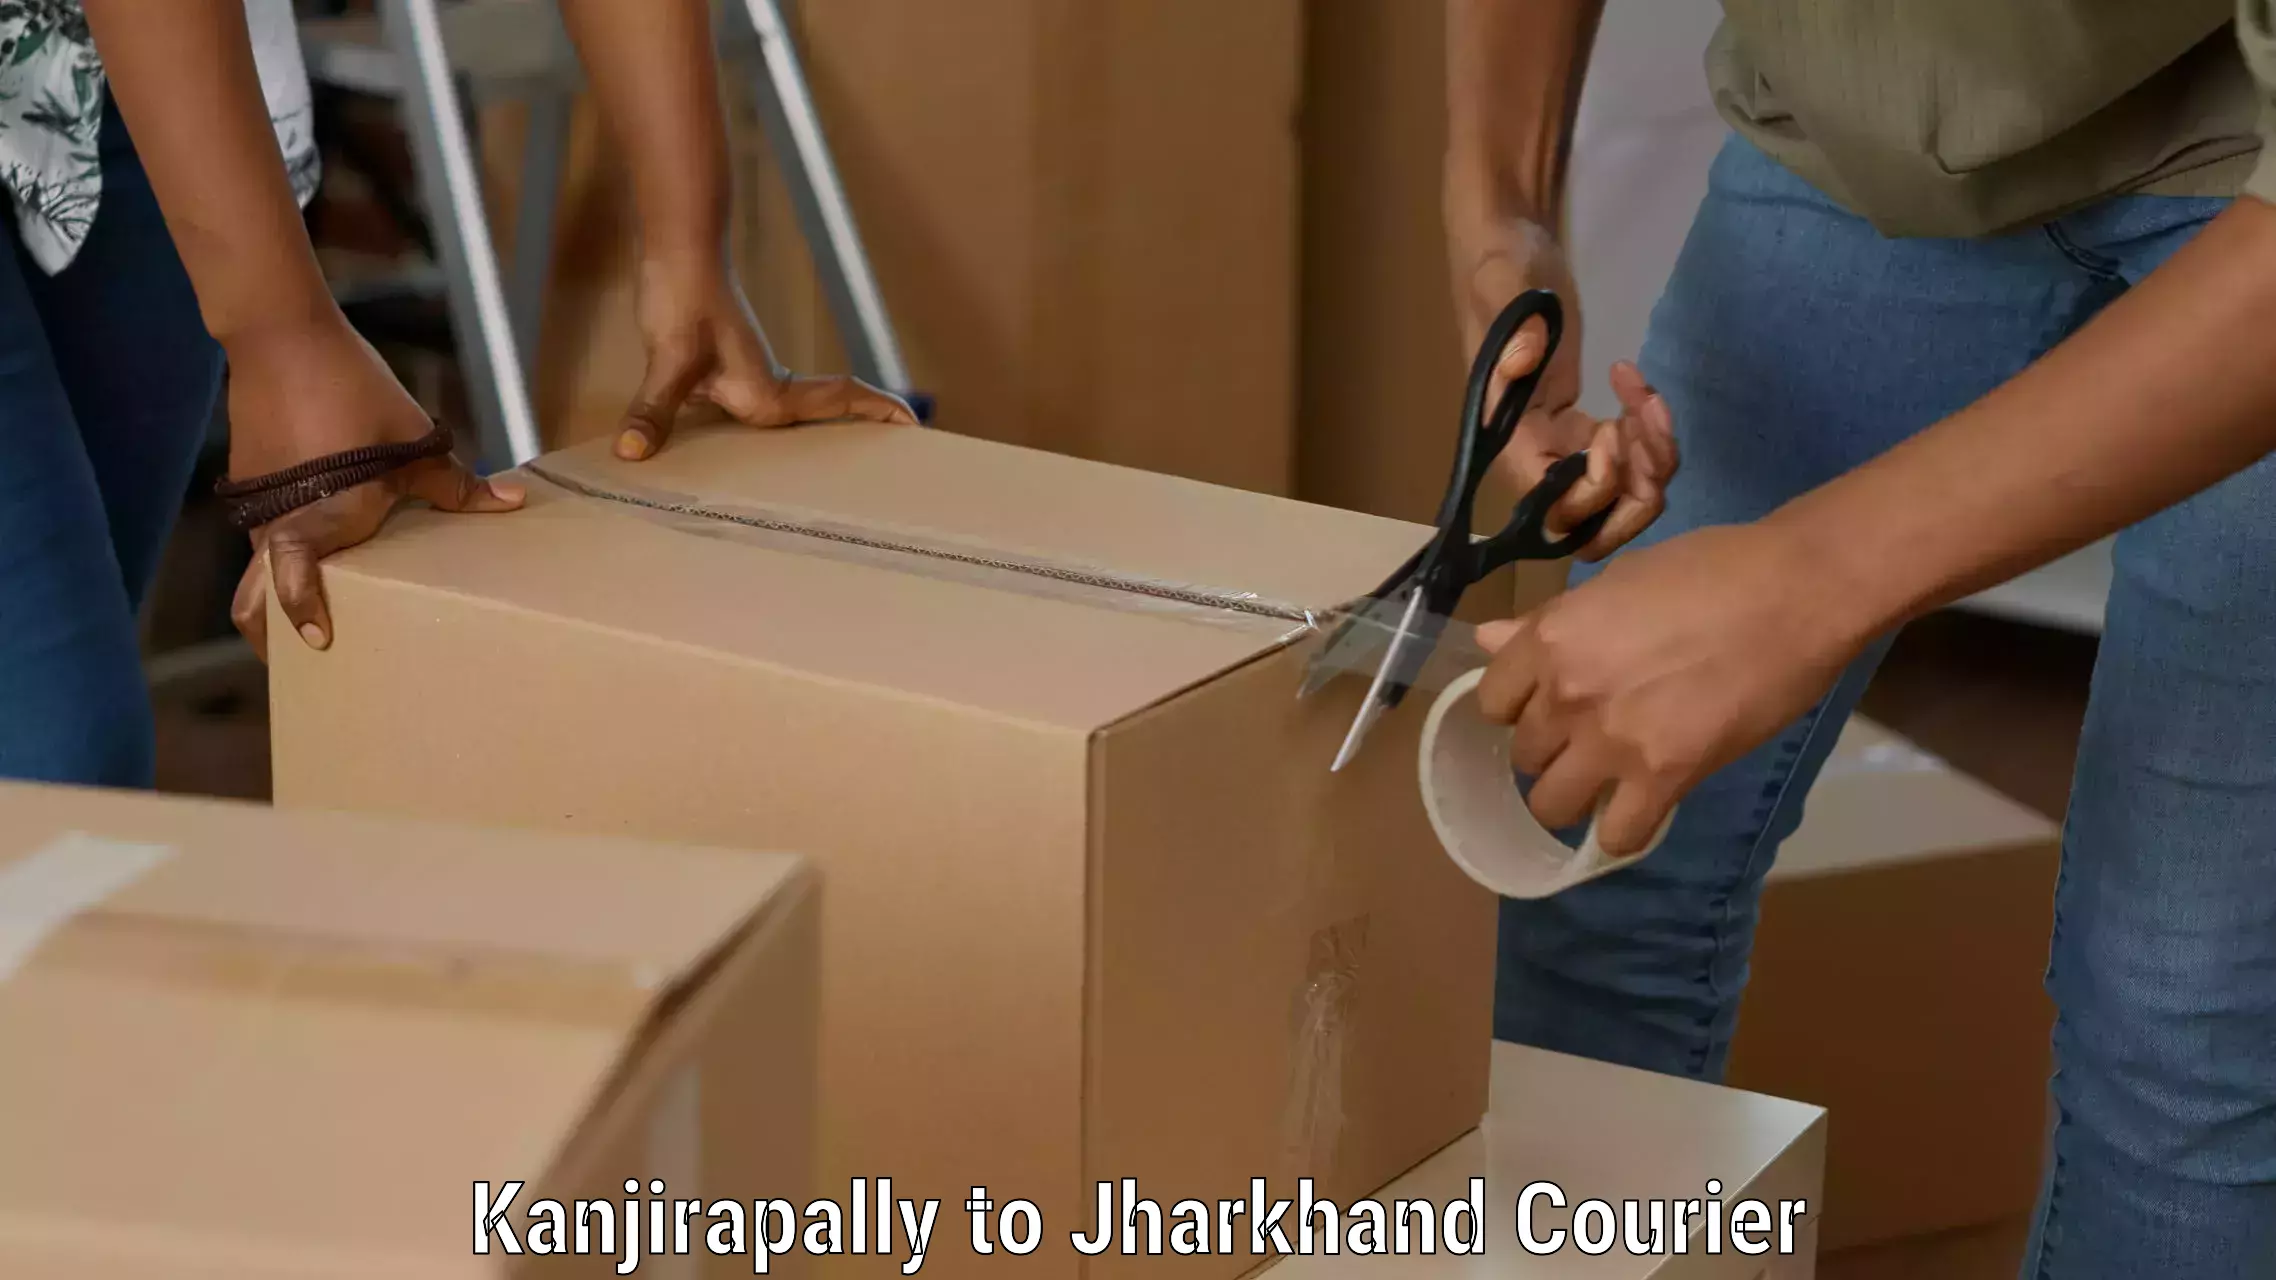 24/7 shipping services Kanjirapally to Godabar Chatra